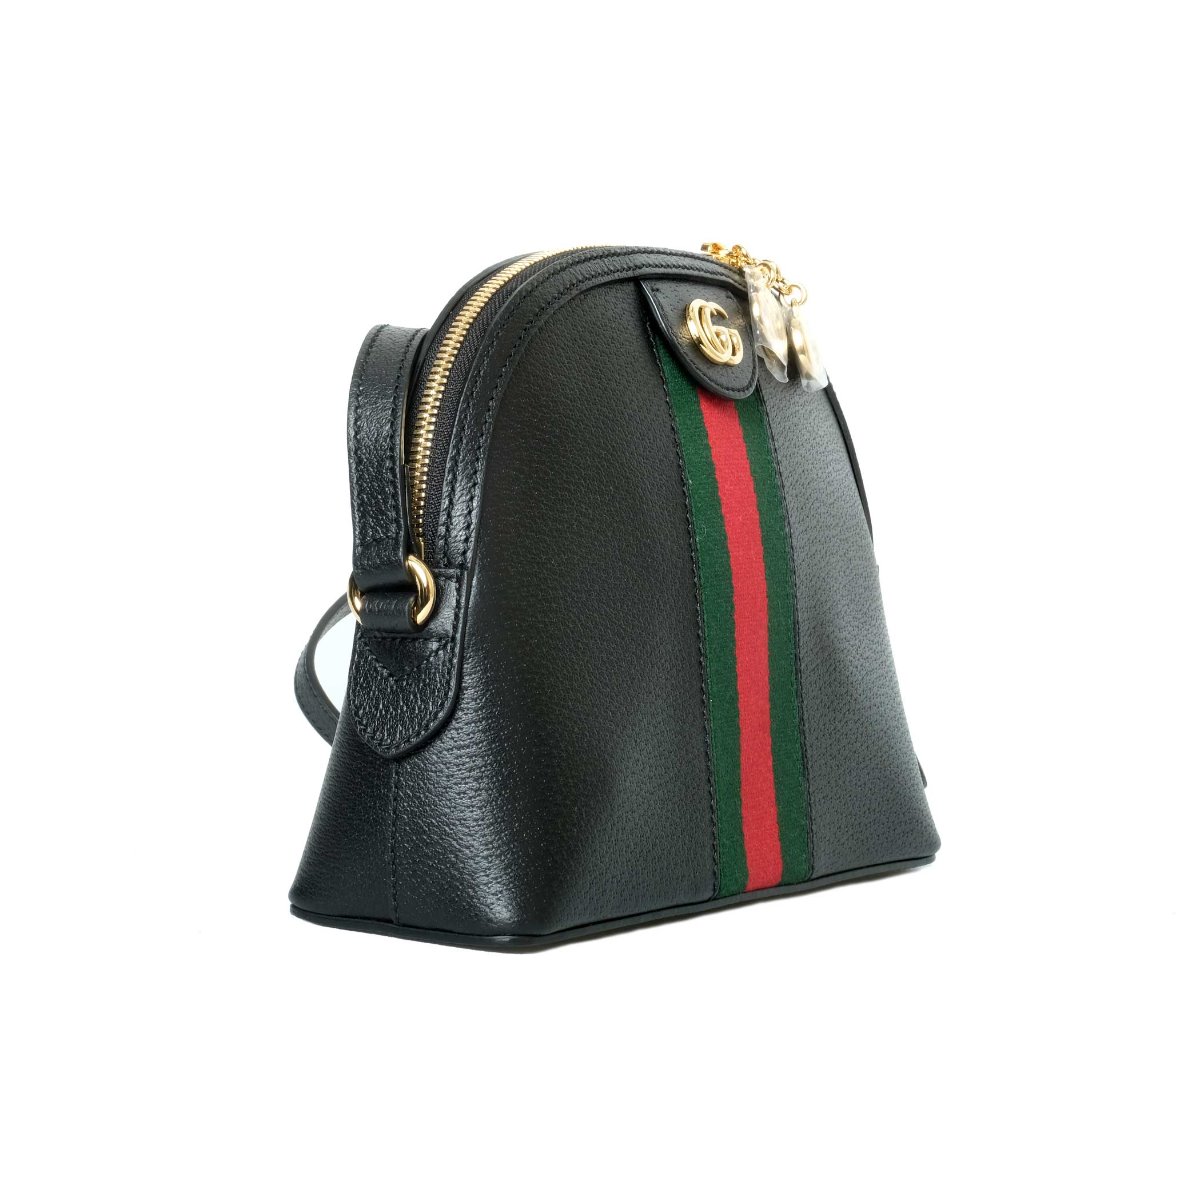 Gucci Small GG Supreme Ophidia Black Bag | eBay